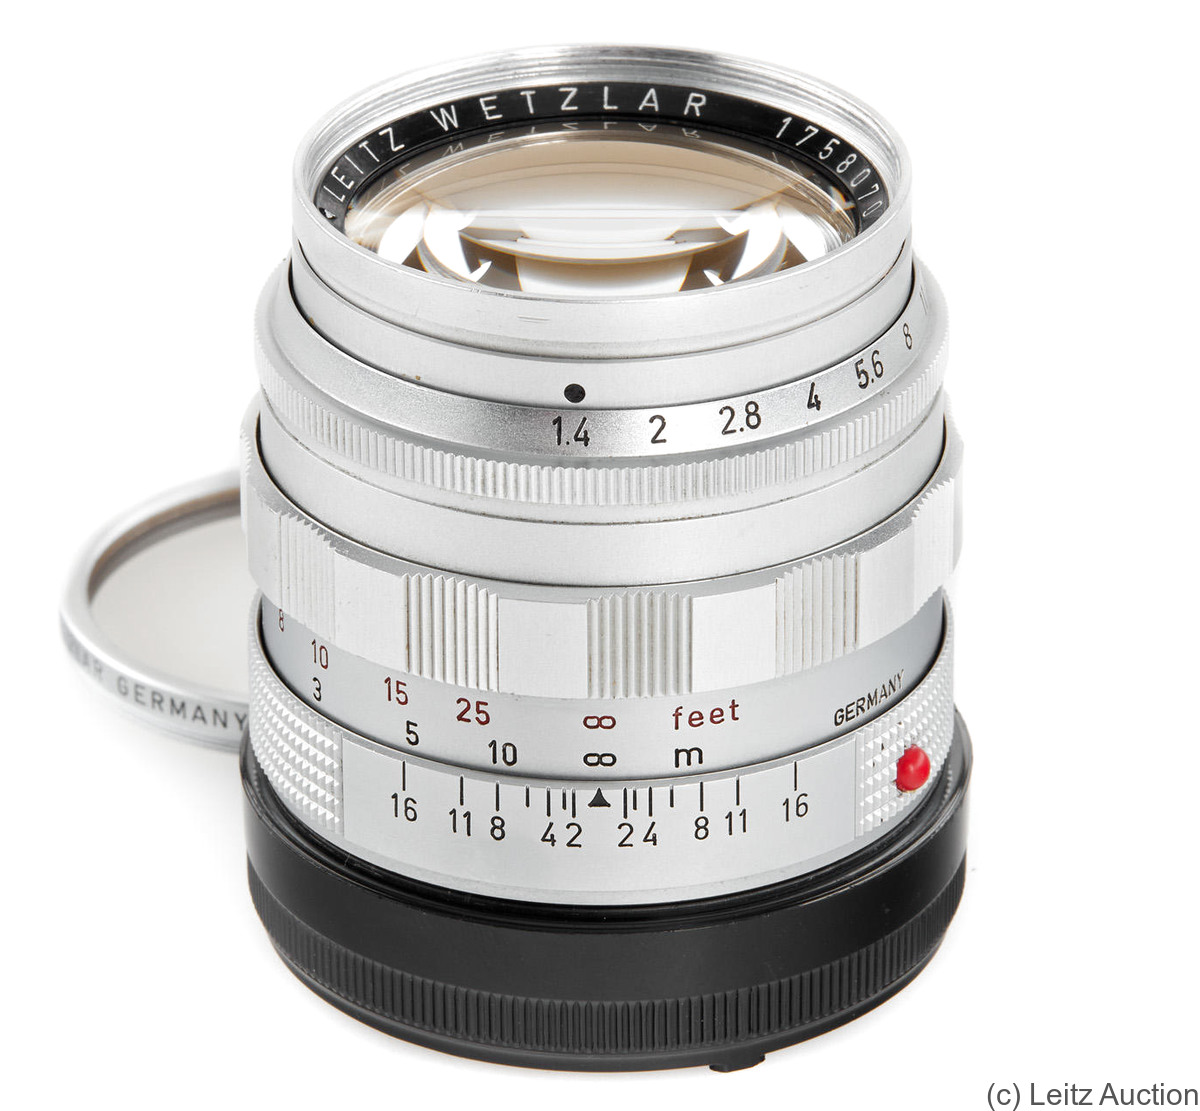 Leitz: 50mm (5cm) f1.4 Summilux (BM, chrome, 1958) camera